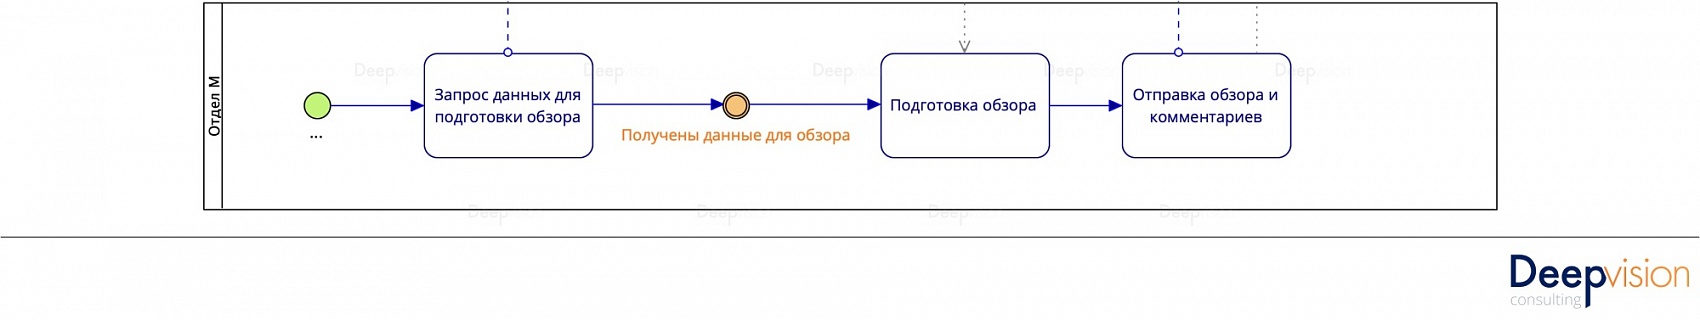 Примеры BPMN. Расположение операции в пуле.jpg